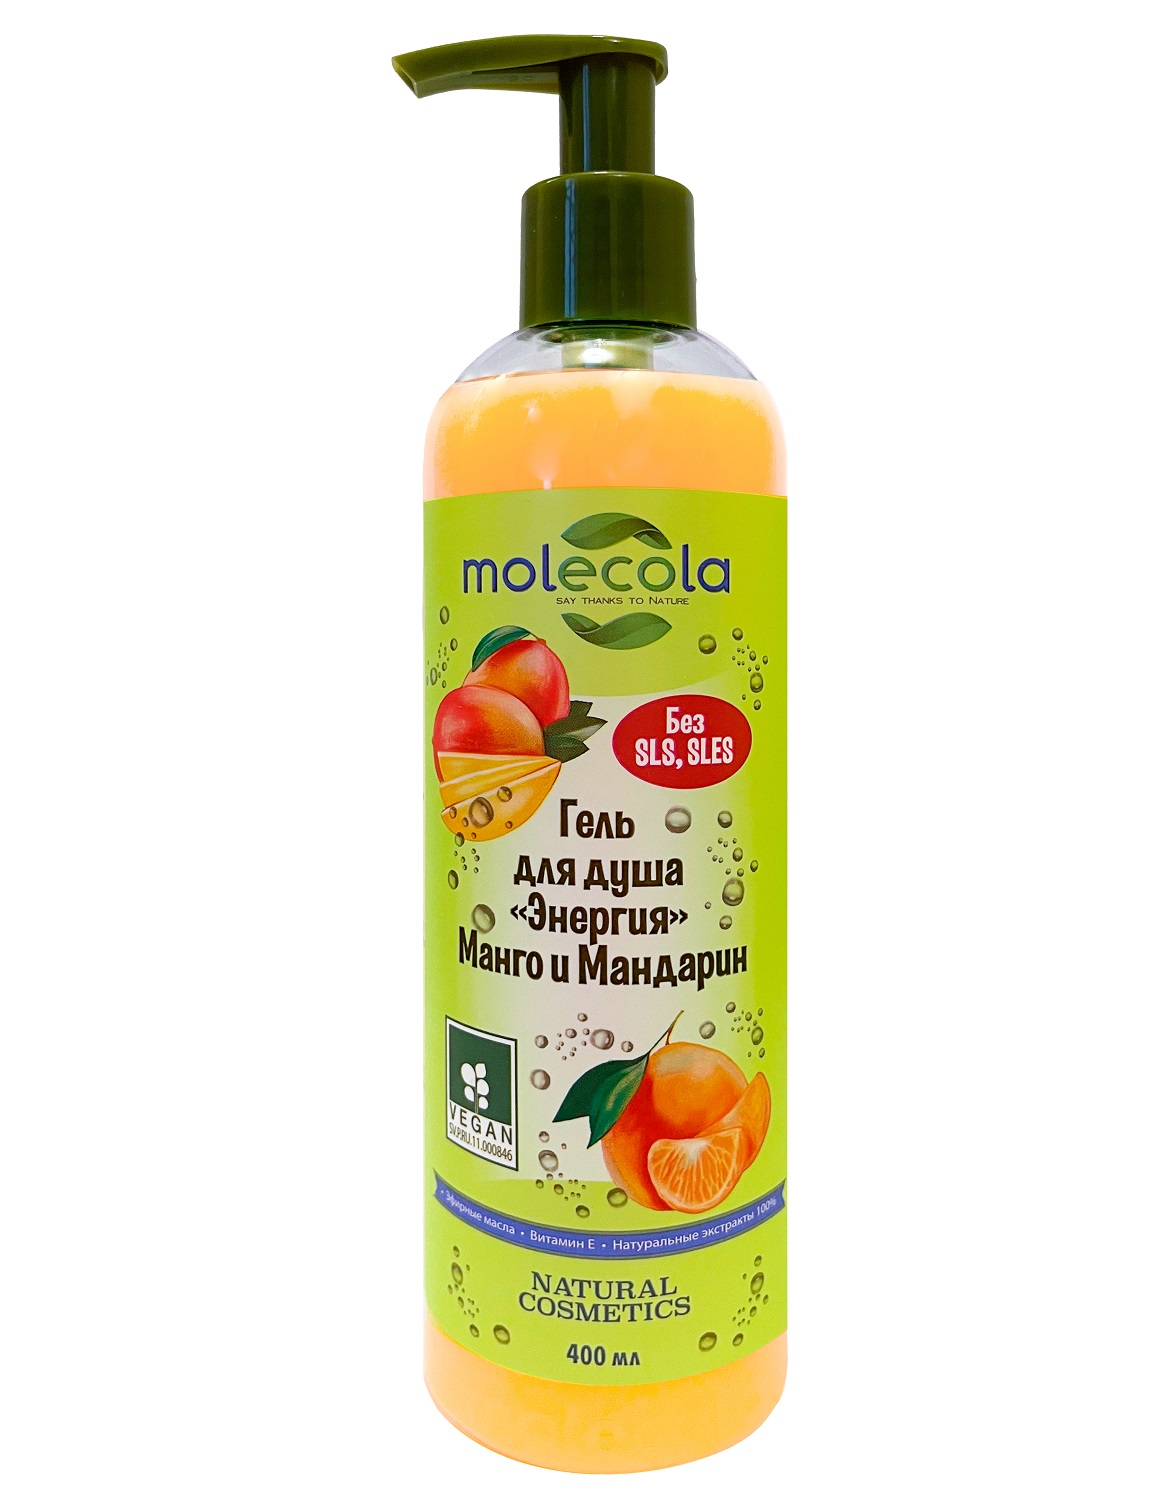 Molecola Гель для душа «Энергия» с манго и мандарином, 400 мл (Molecola, Для душа и ванны) гель для душа энергия molecola с ароматом манго и мандарина 400 мл